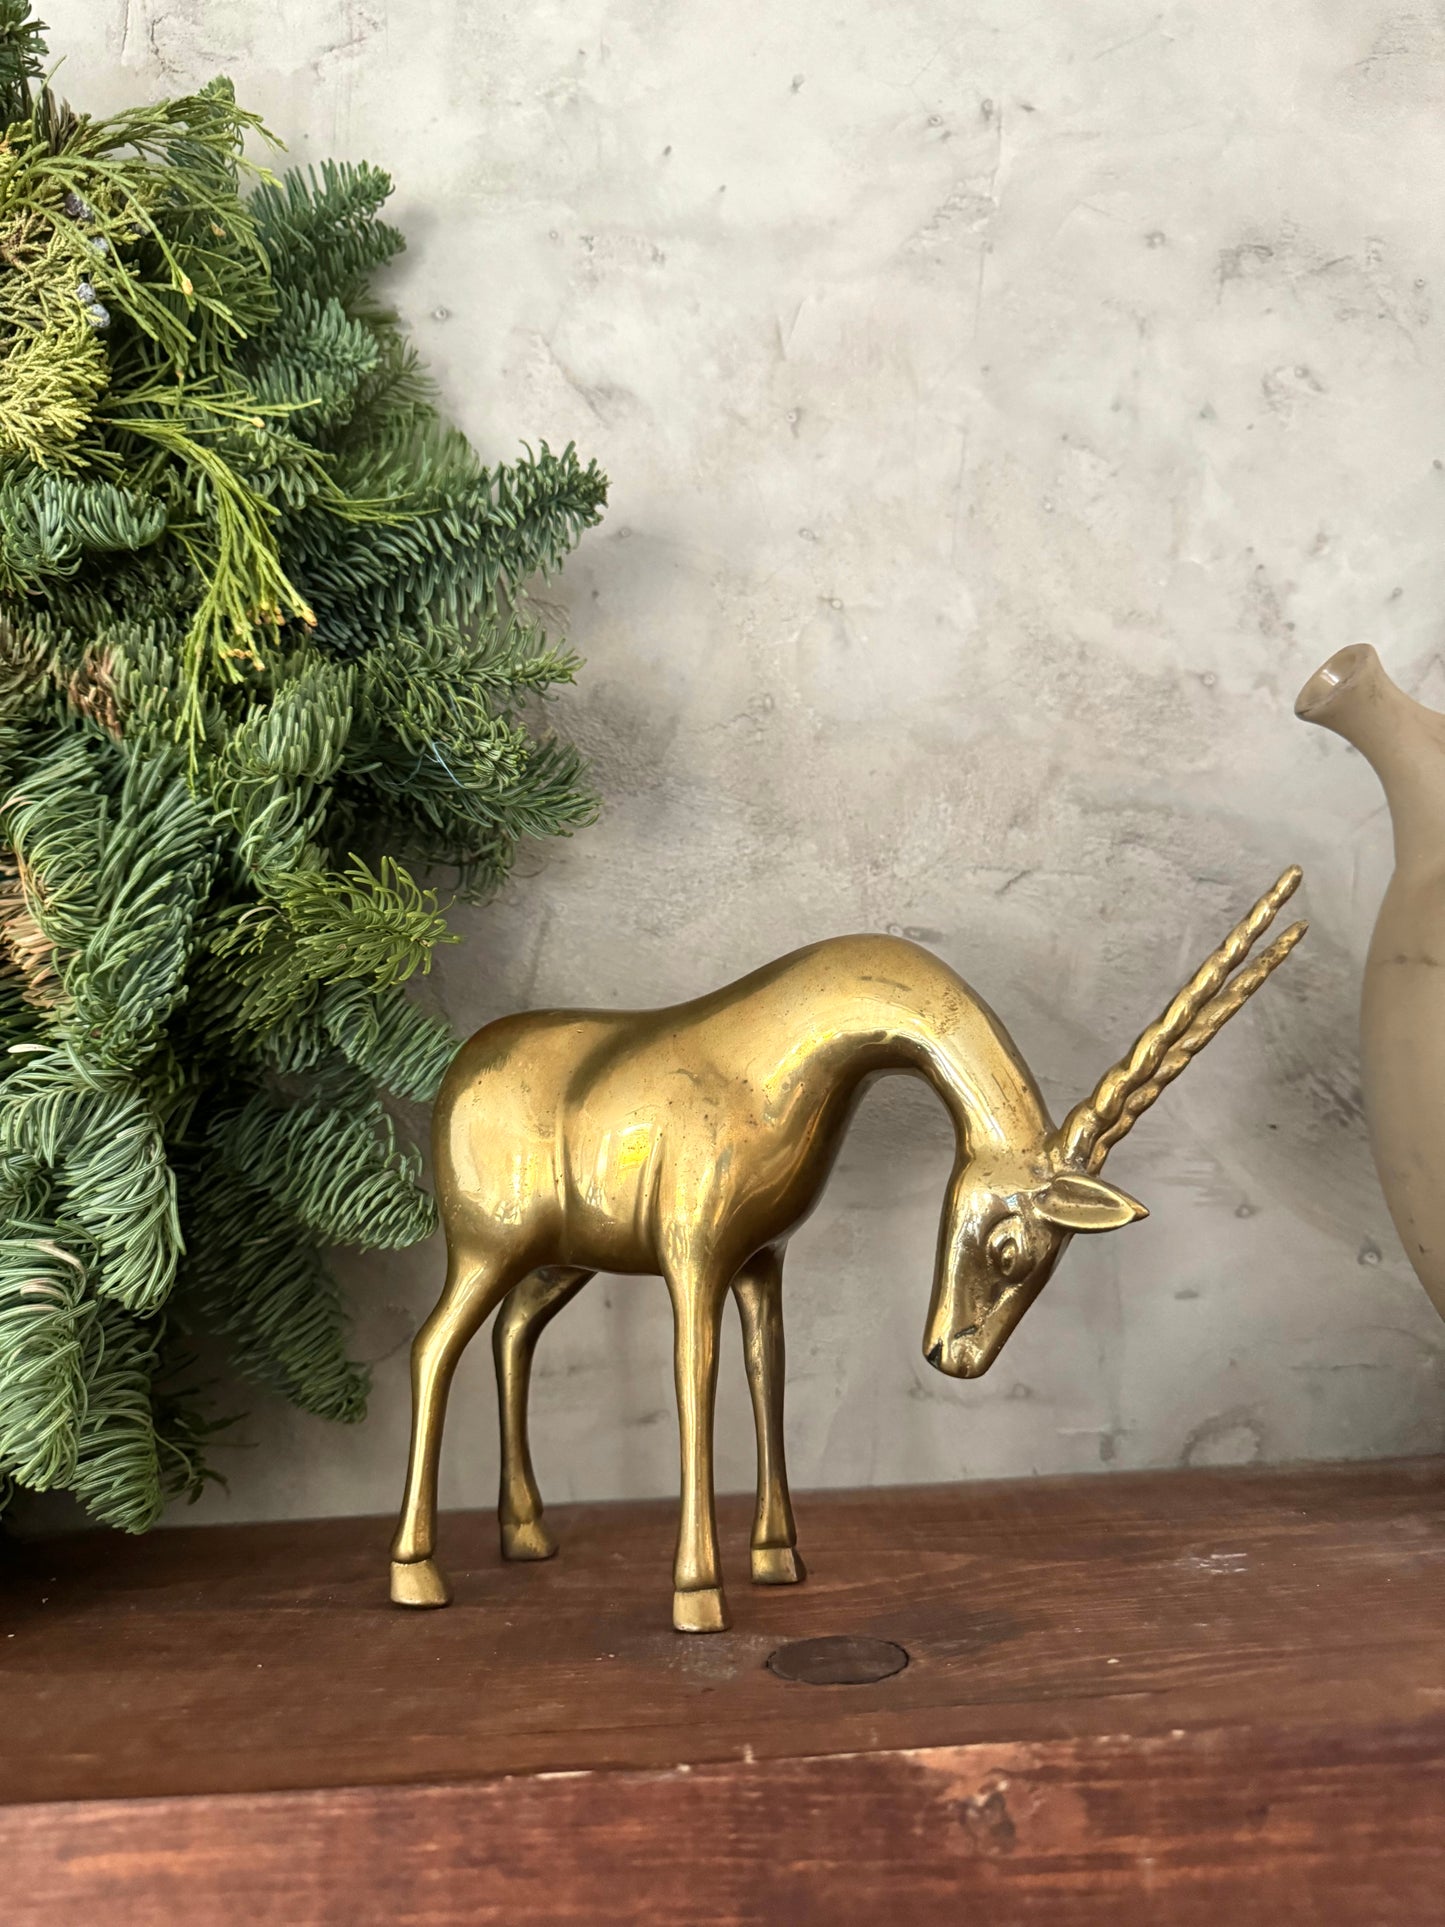 Brass Gazelle figurine shelf decor | Christmas decor